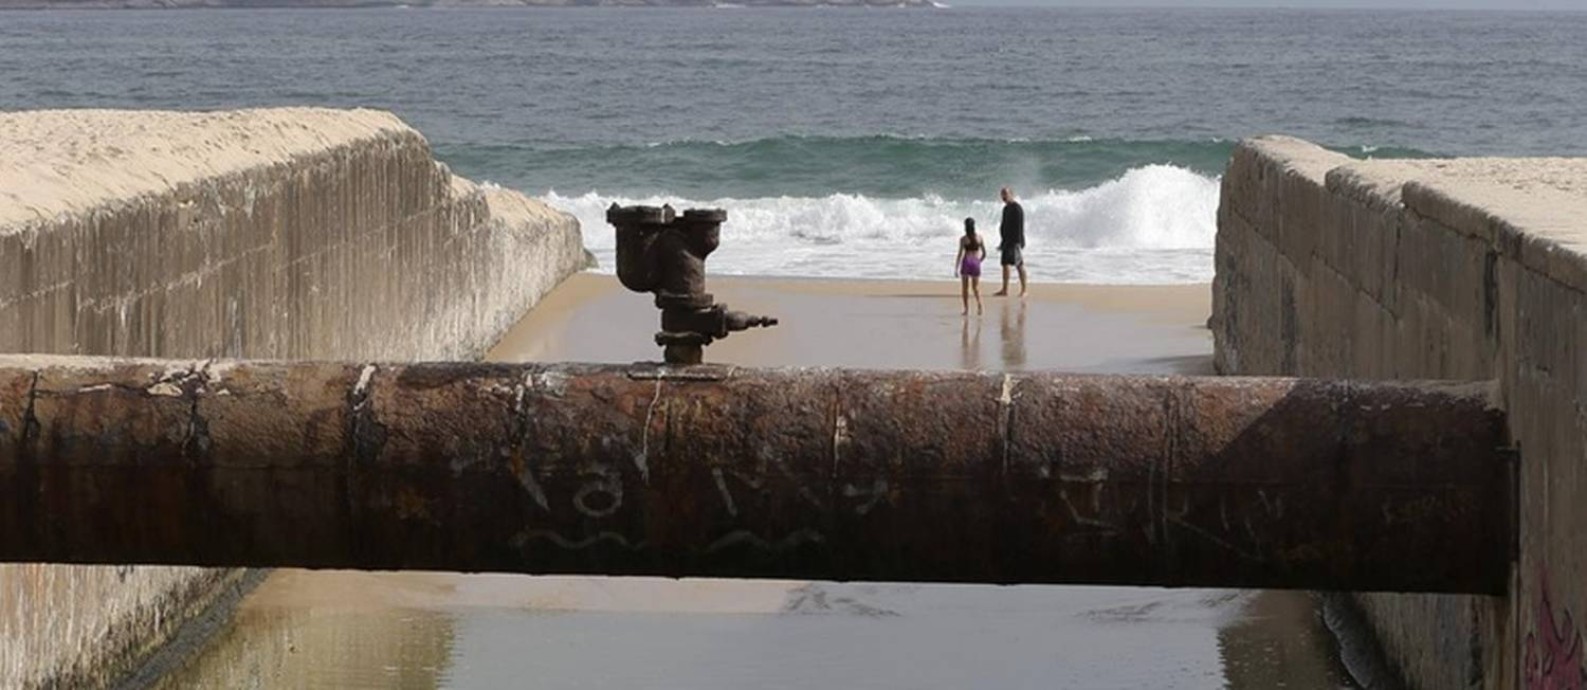 O vazamento, próximo à Praia do Leblon, foi gravado por morador Foto: Domingos Peixoto / Agência O Globo